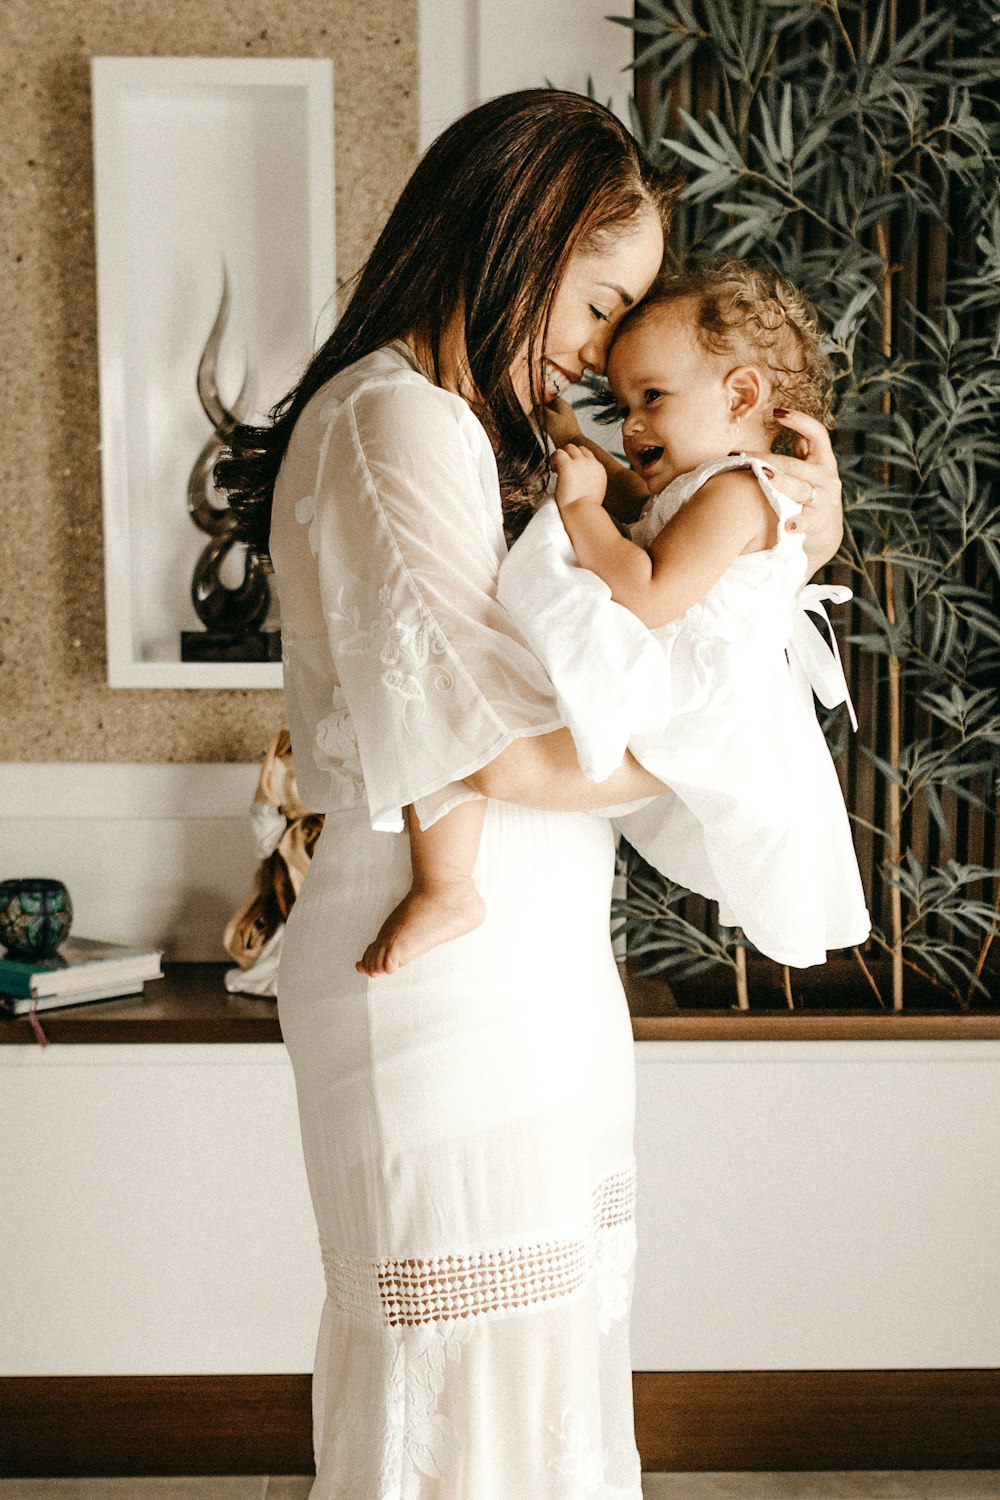 mujer sonriente con vestido blanco sosteniendo a un niño